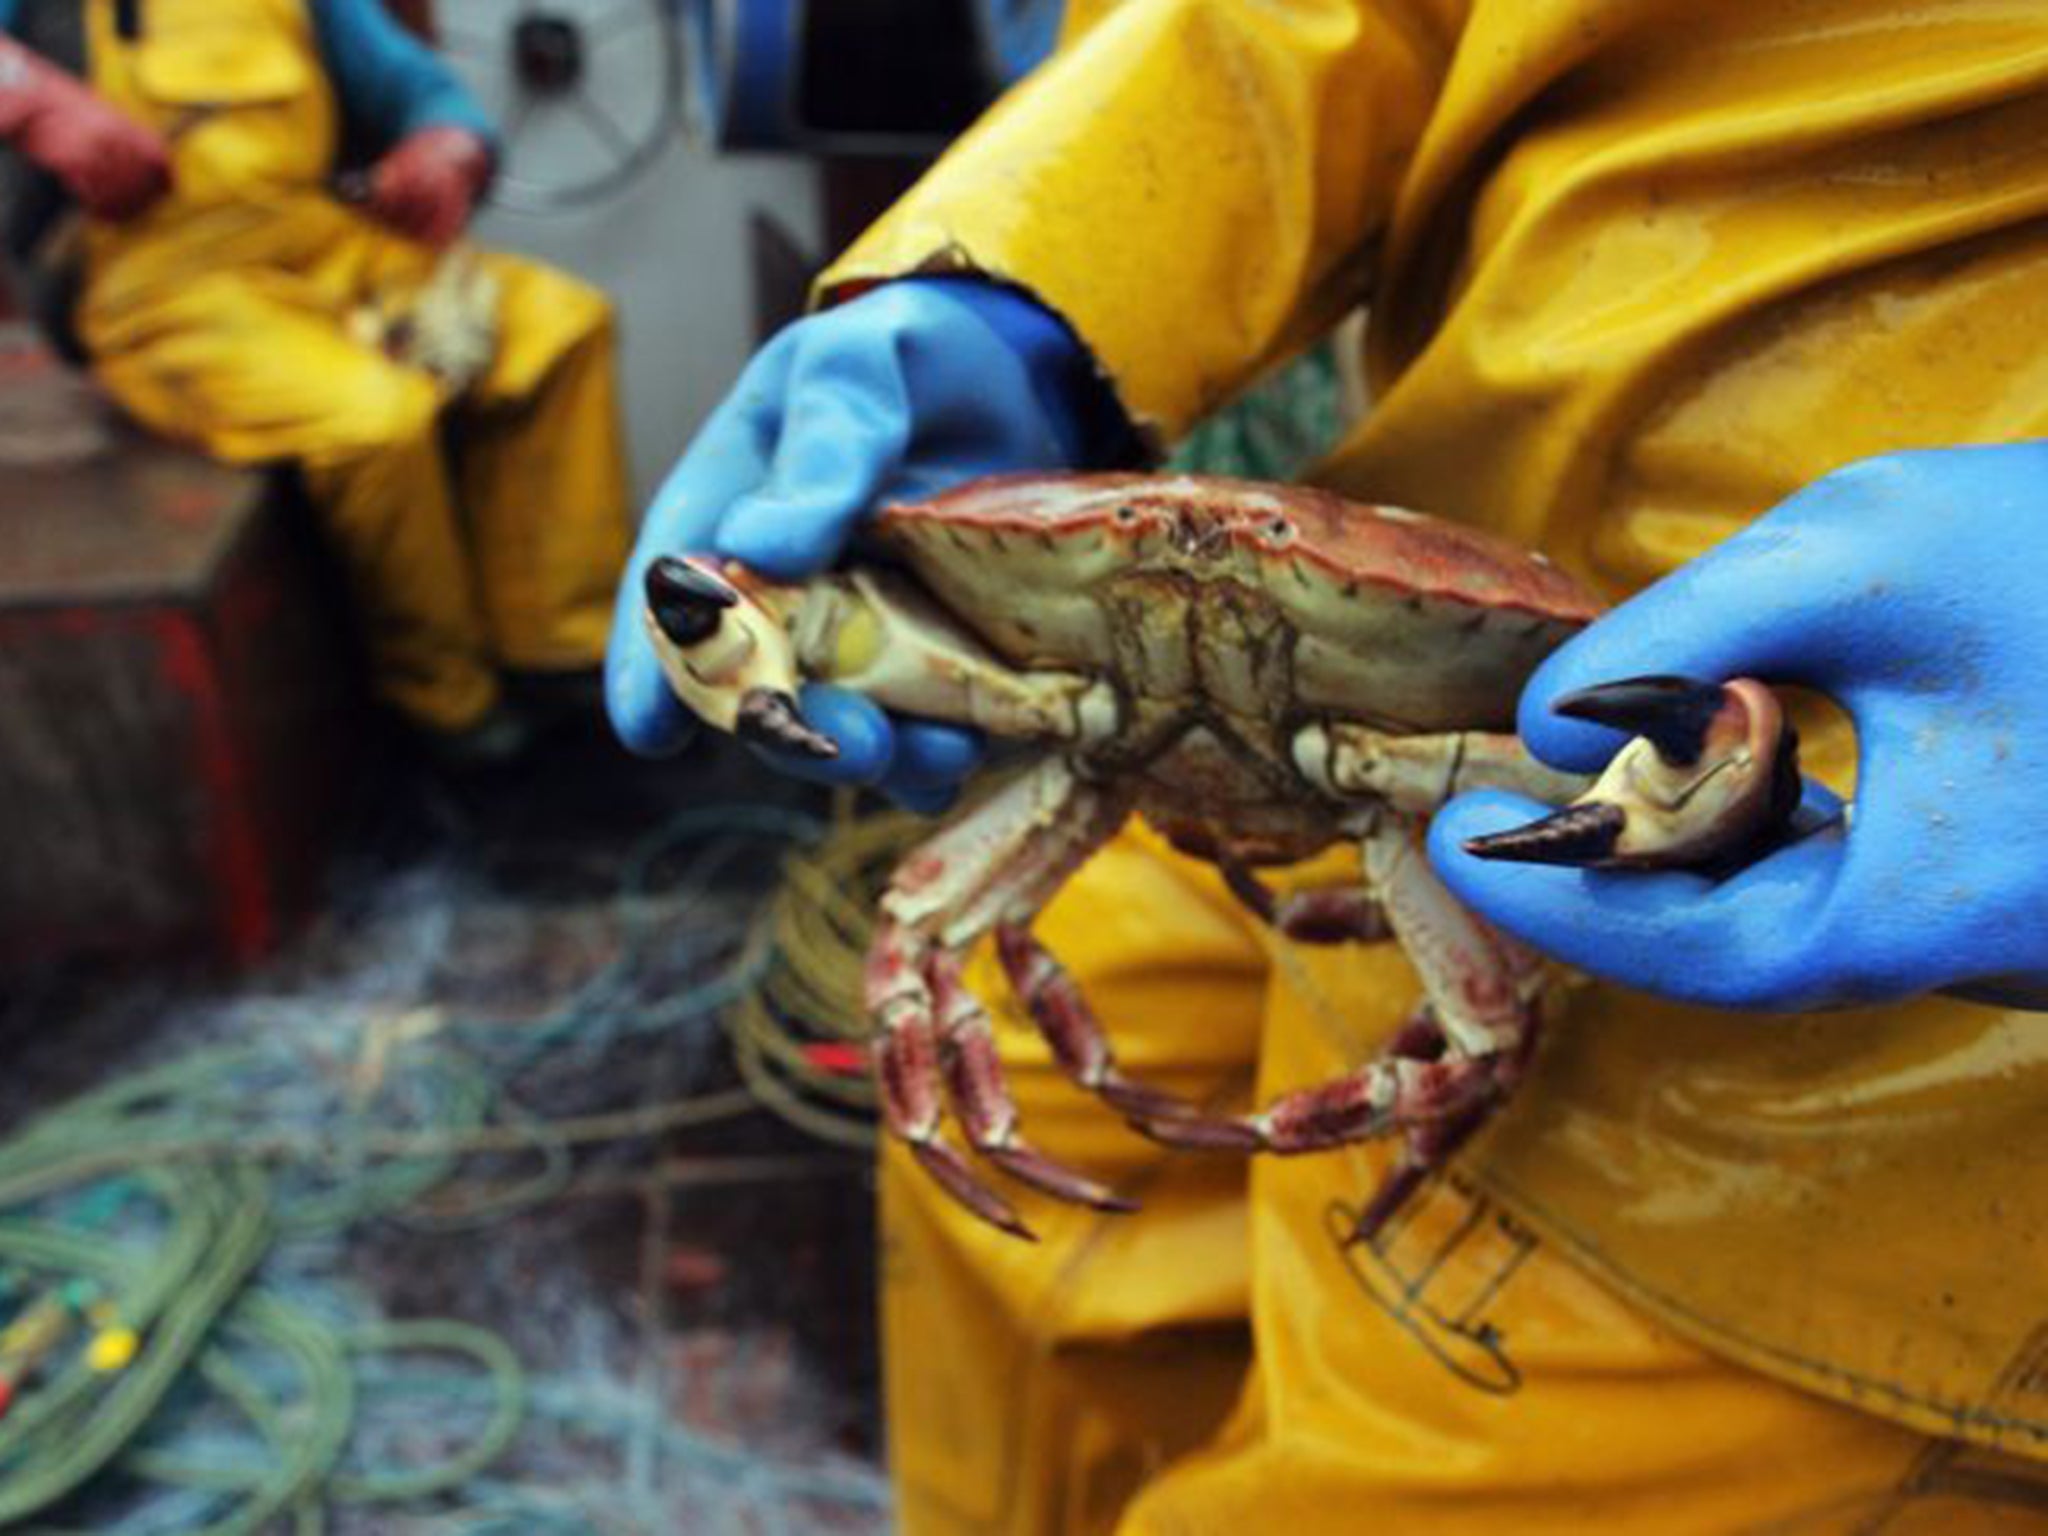 Fare trade: a Cornish crab (Getty)